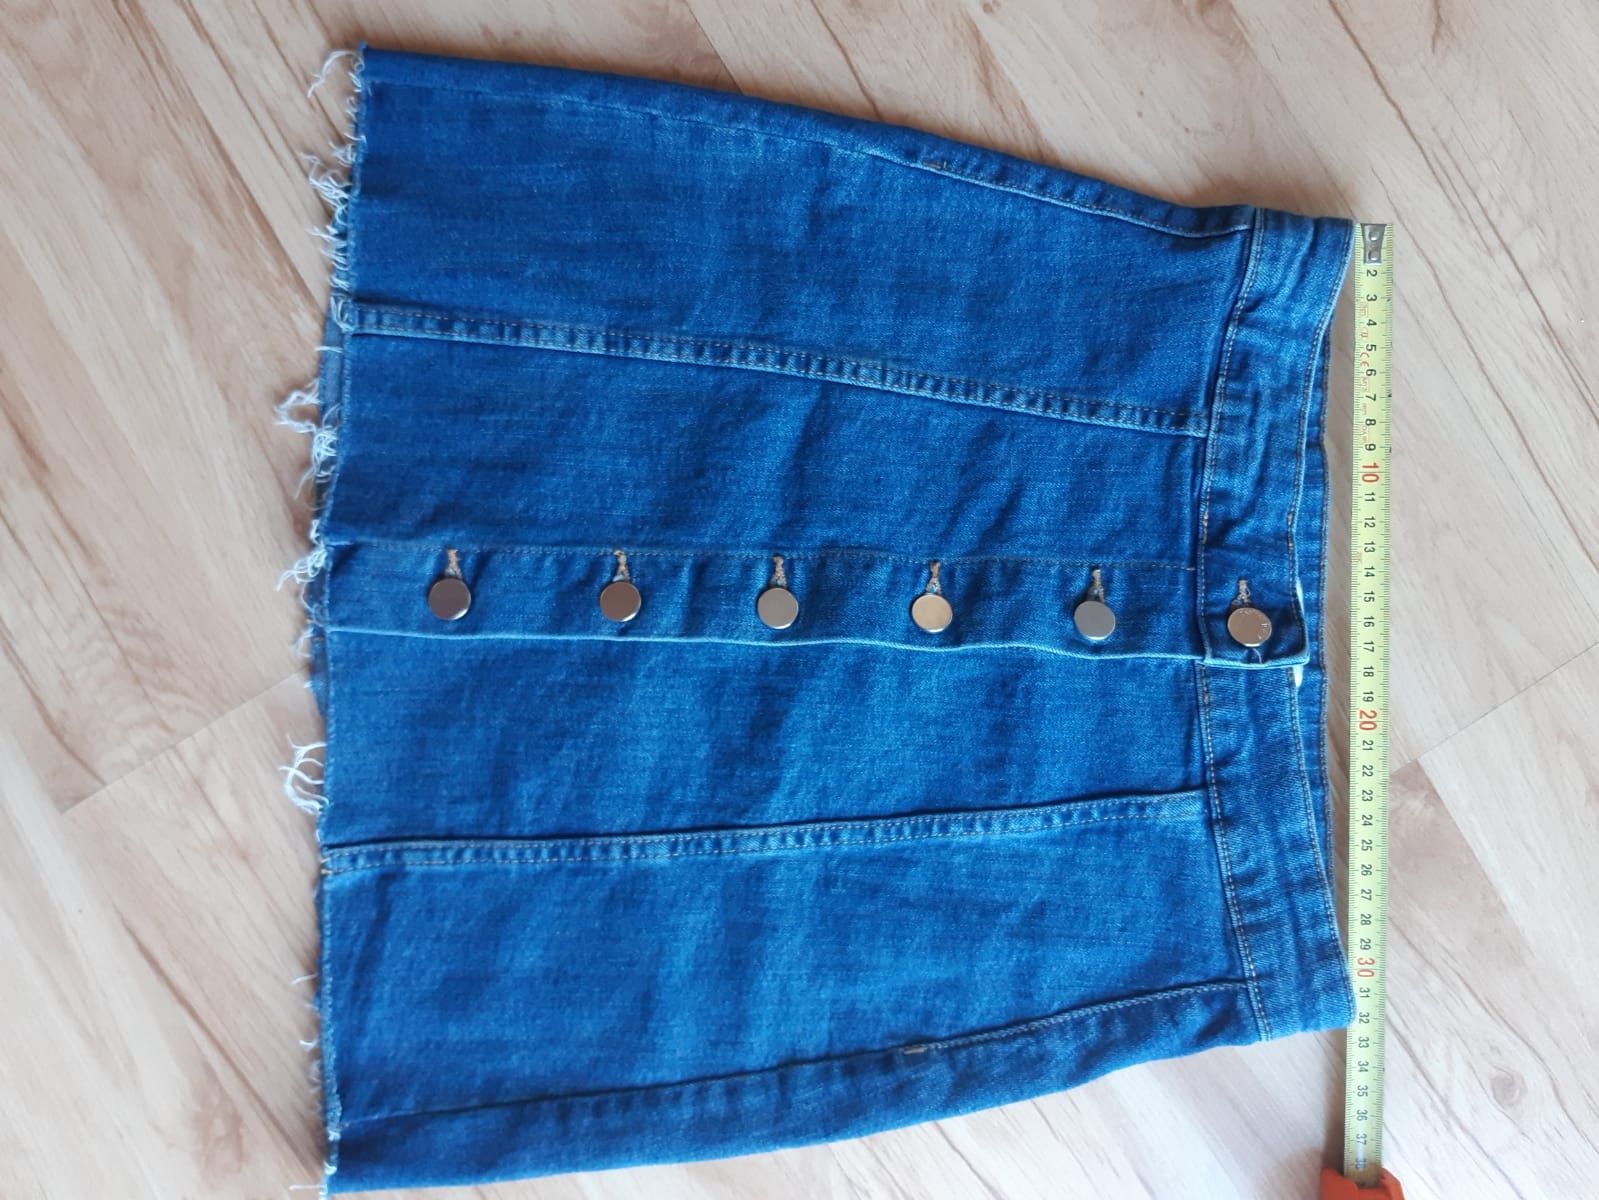 Spódnica spódniczka jeansowa dżinsowa rozm.34 xs